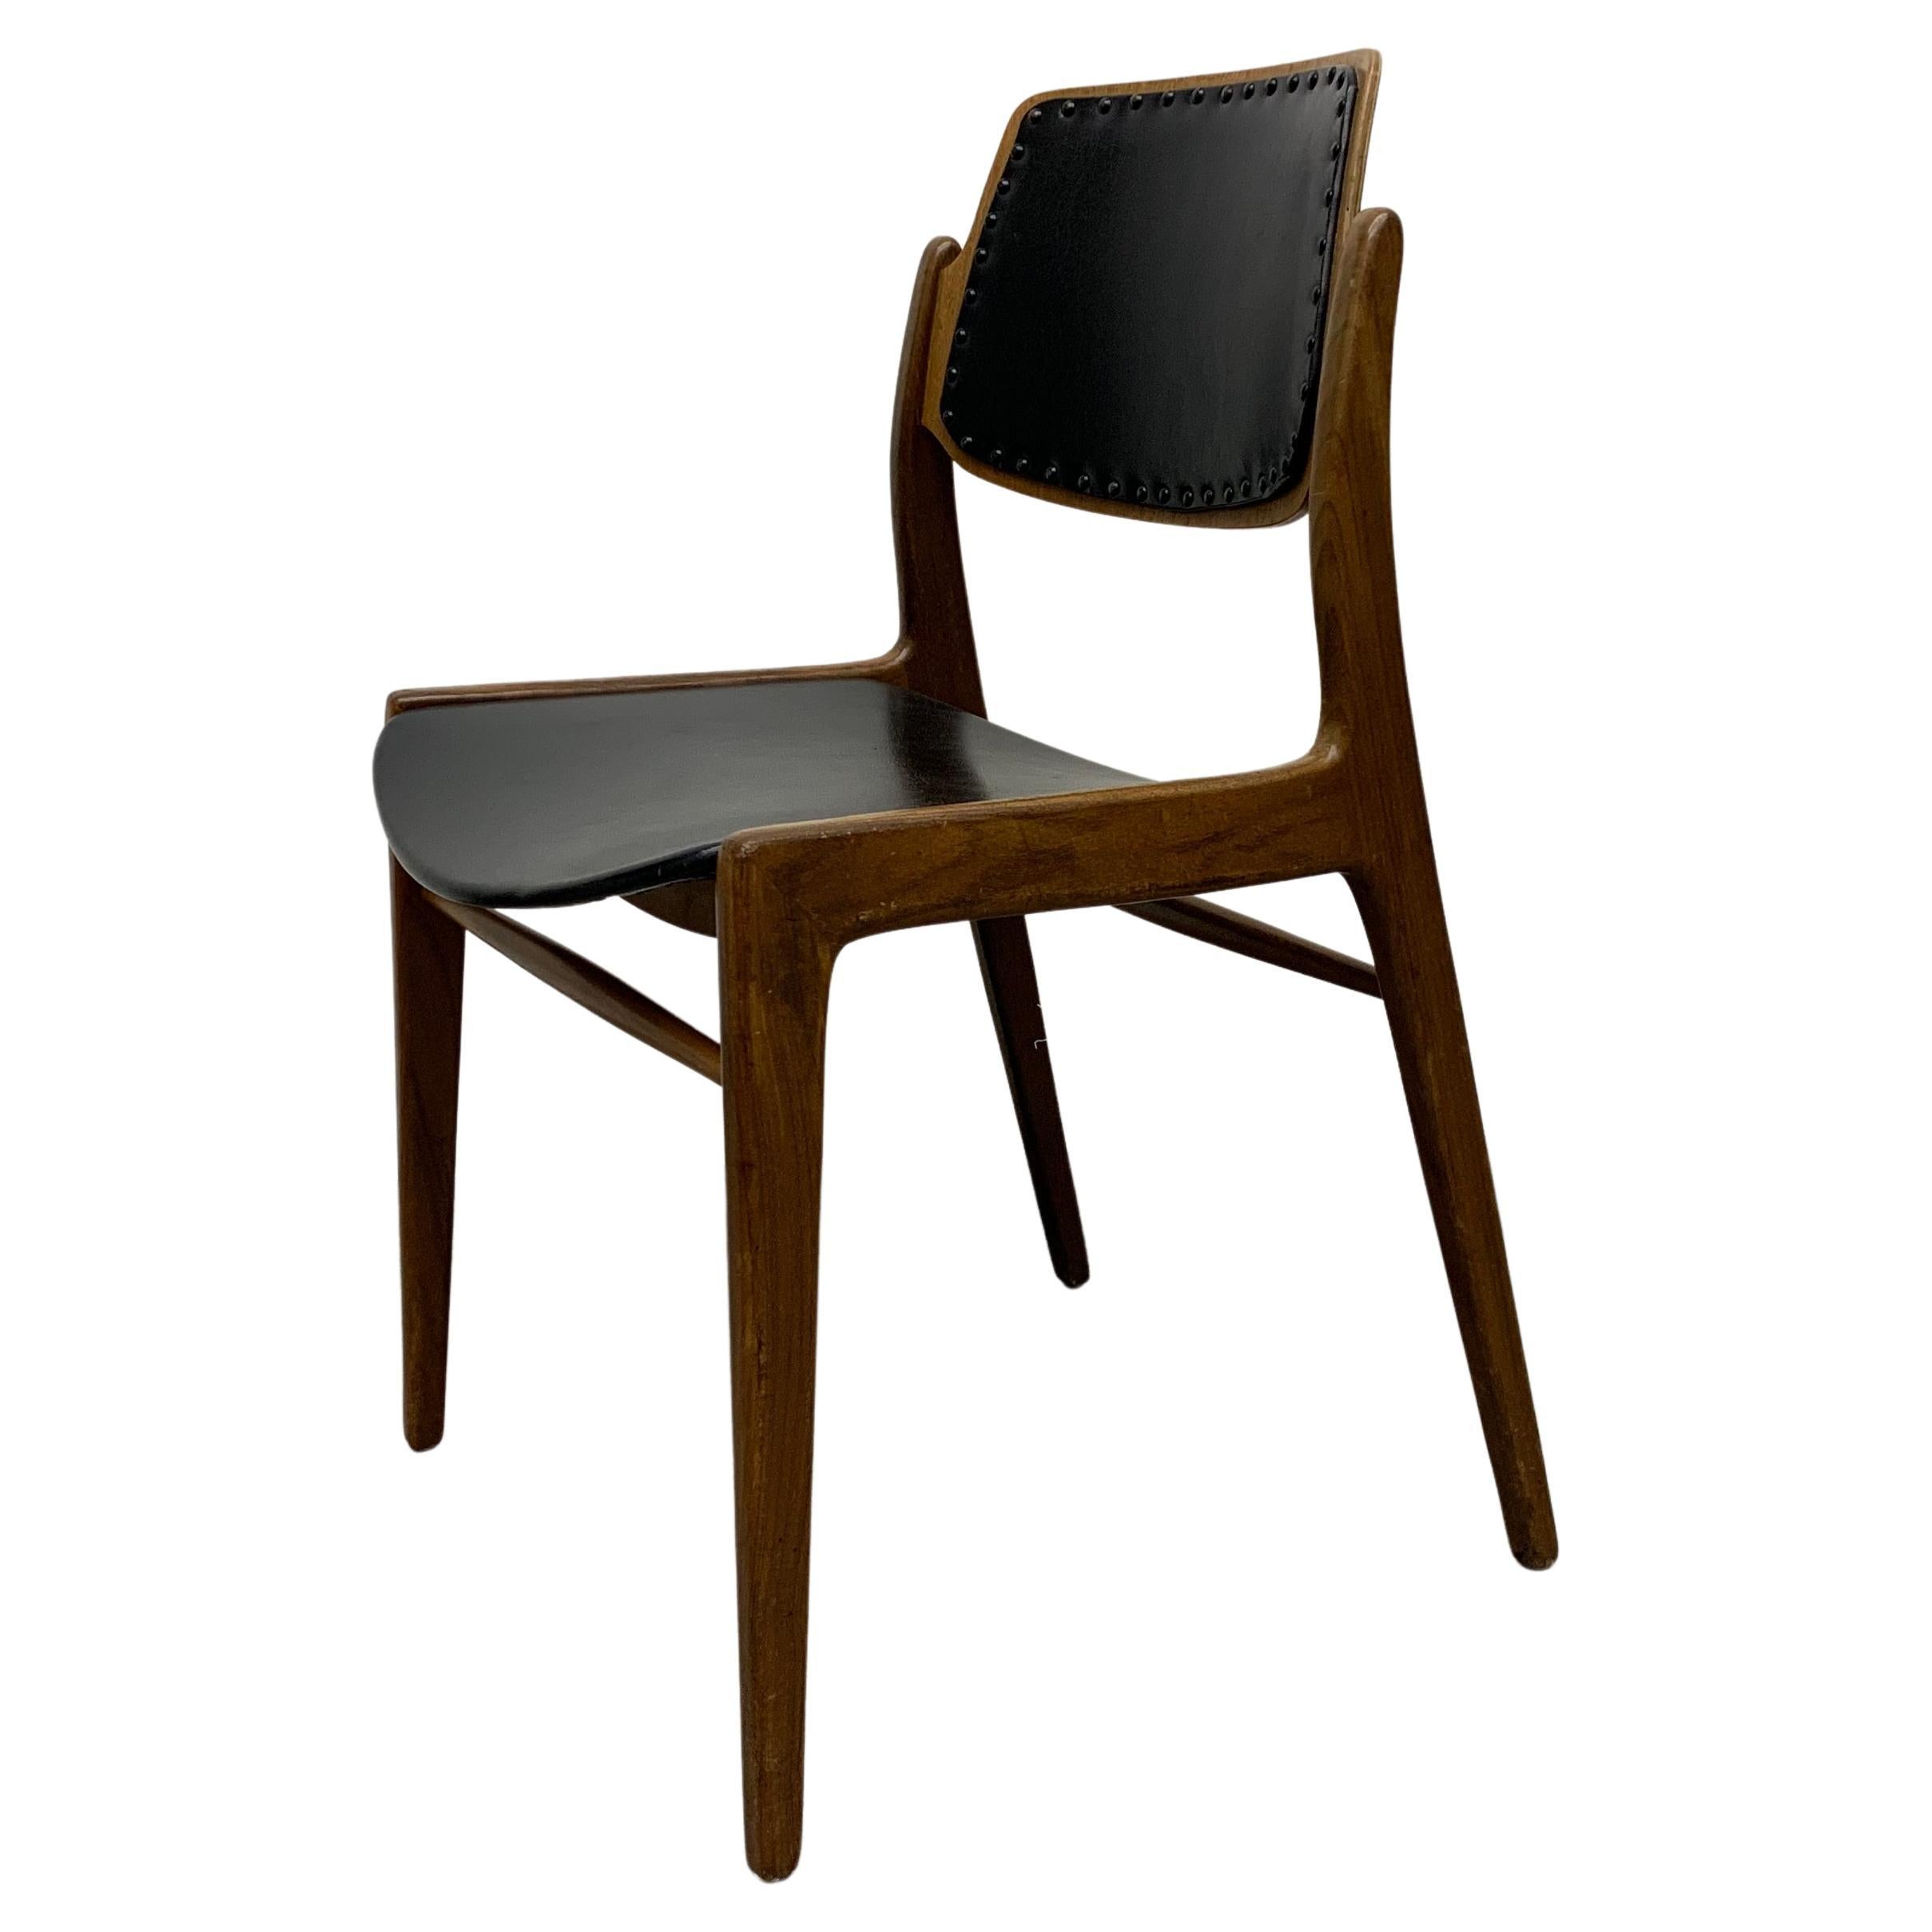 Hartmut Lohmeyer for Wilkhahn 1950’s dining chair teak wood design For Sale